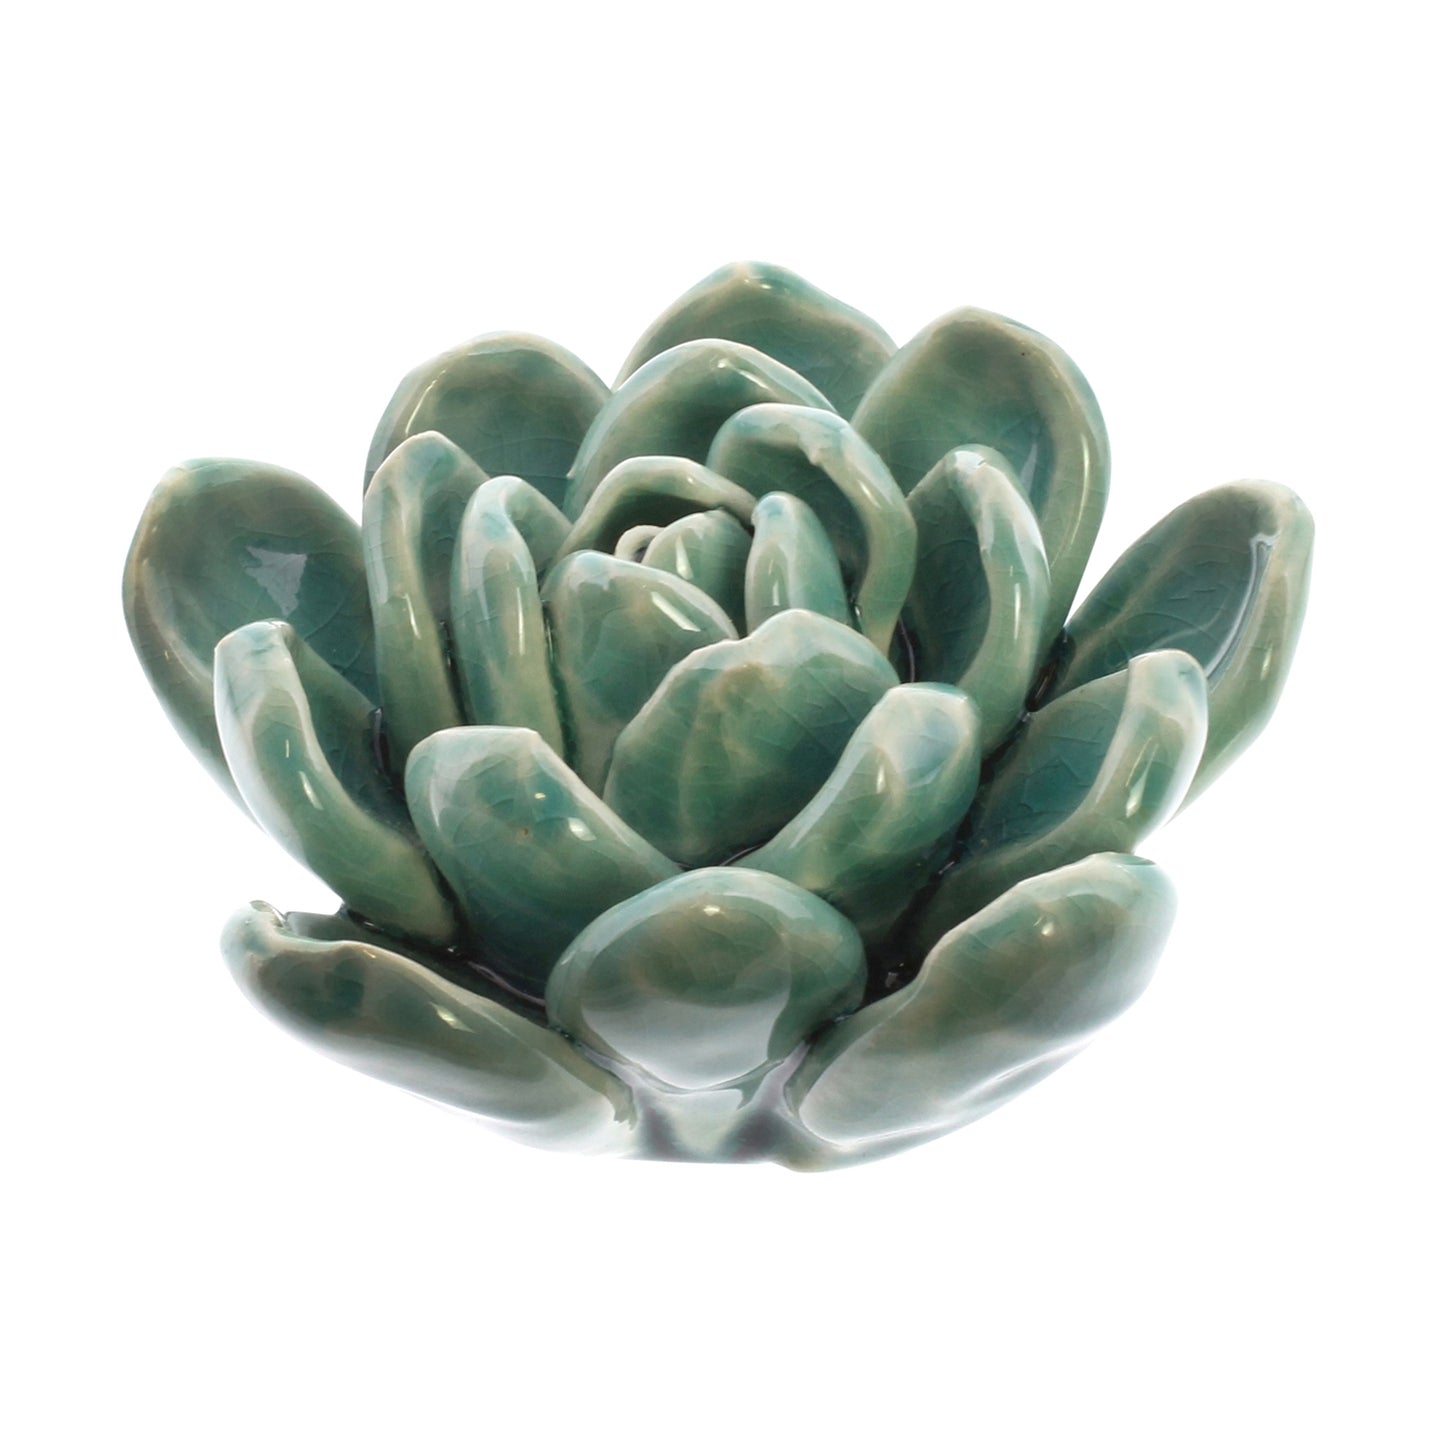 Ceramic Succulent - Medium